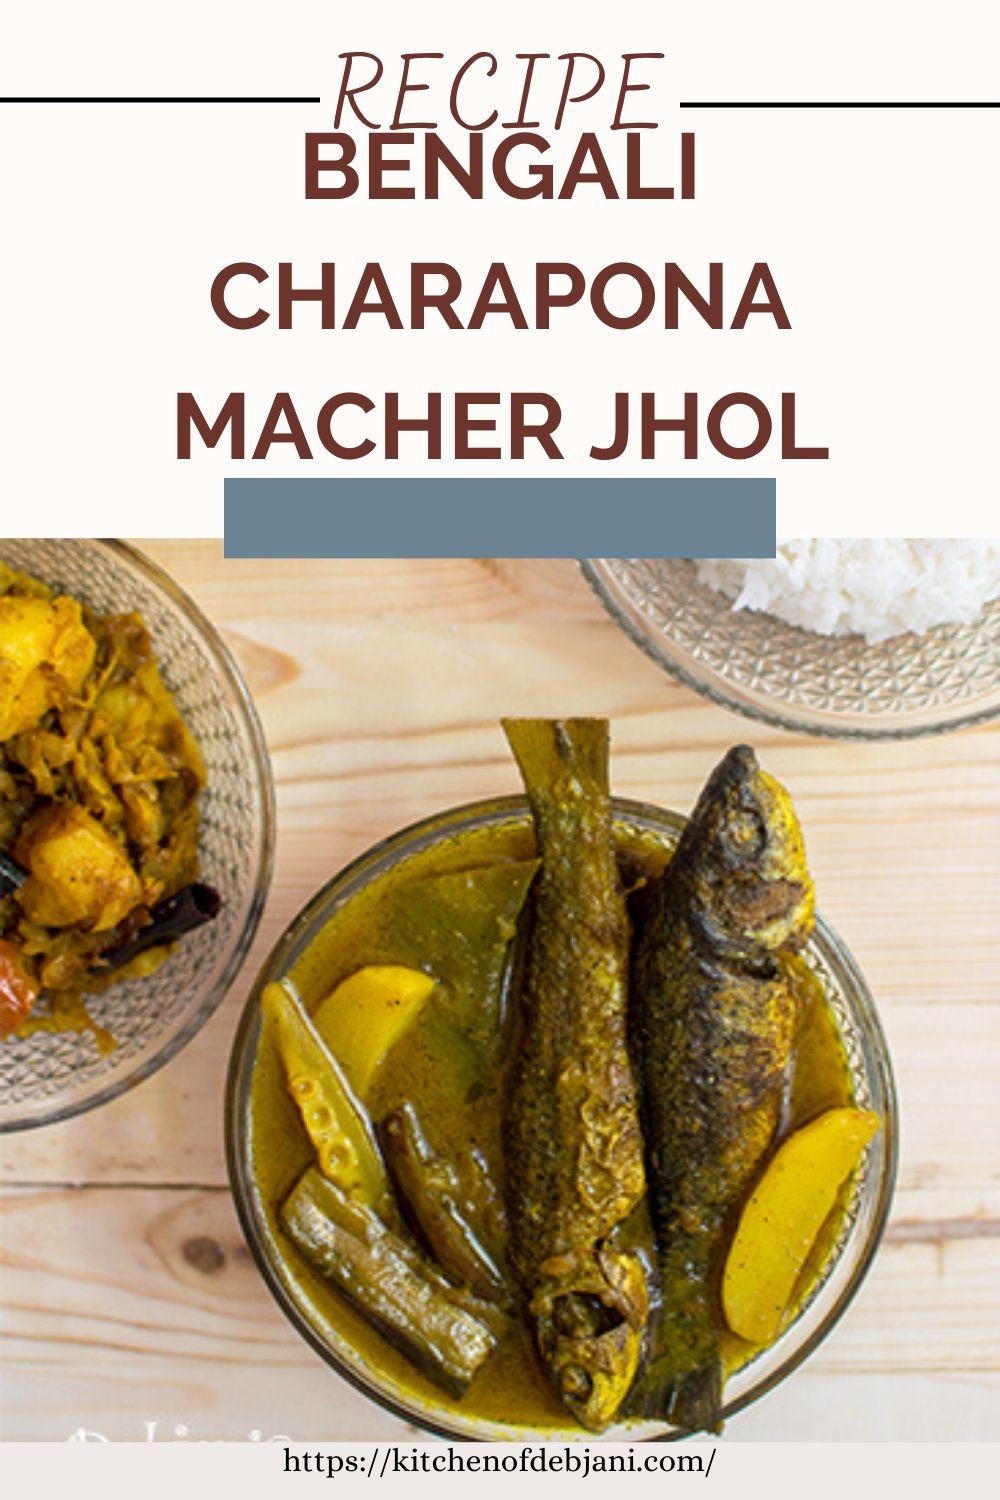 %Bengali Charapona Macher Jhol recipe Photo Food Pinterest Pin